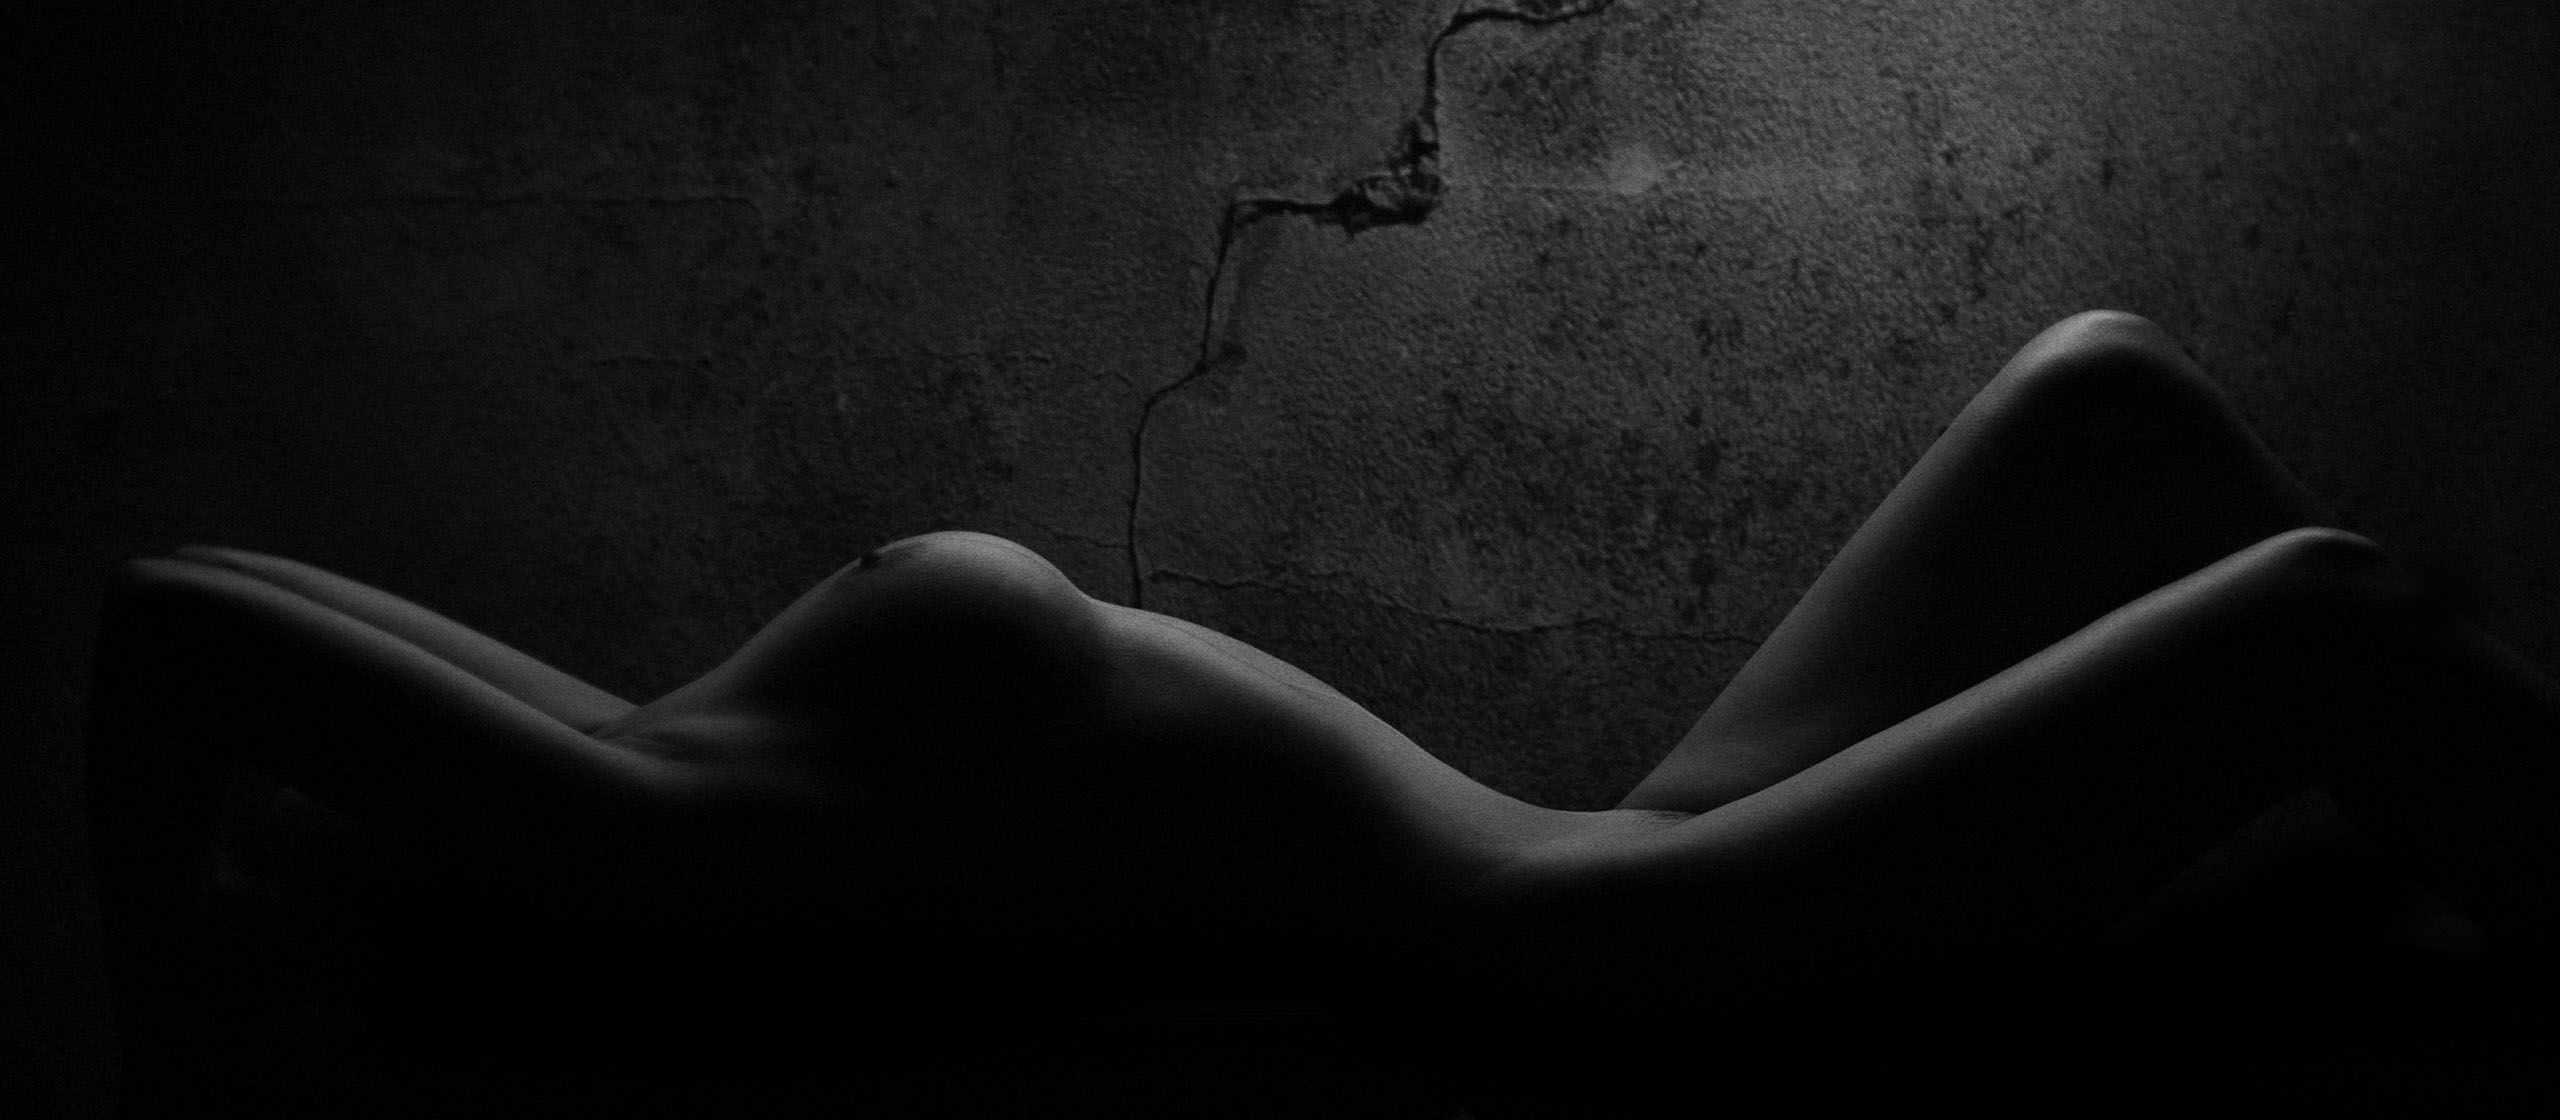 Обнаженная женщина в темной комнате, грудь выделена светом